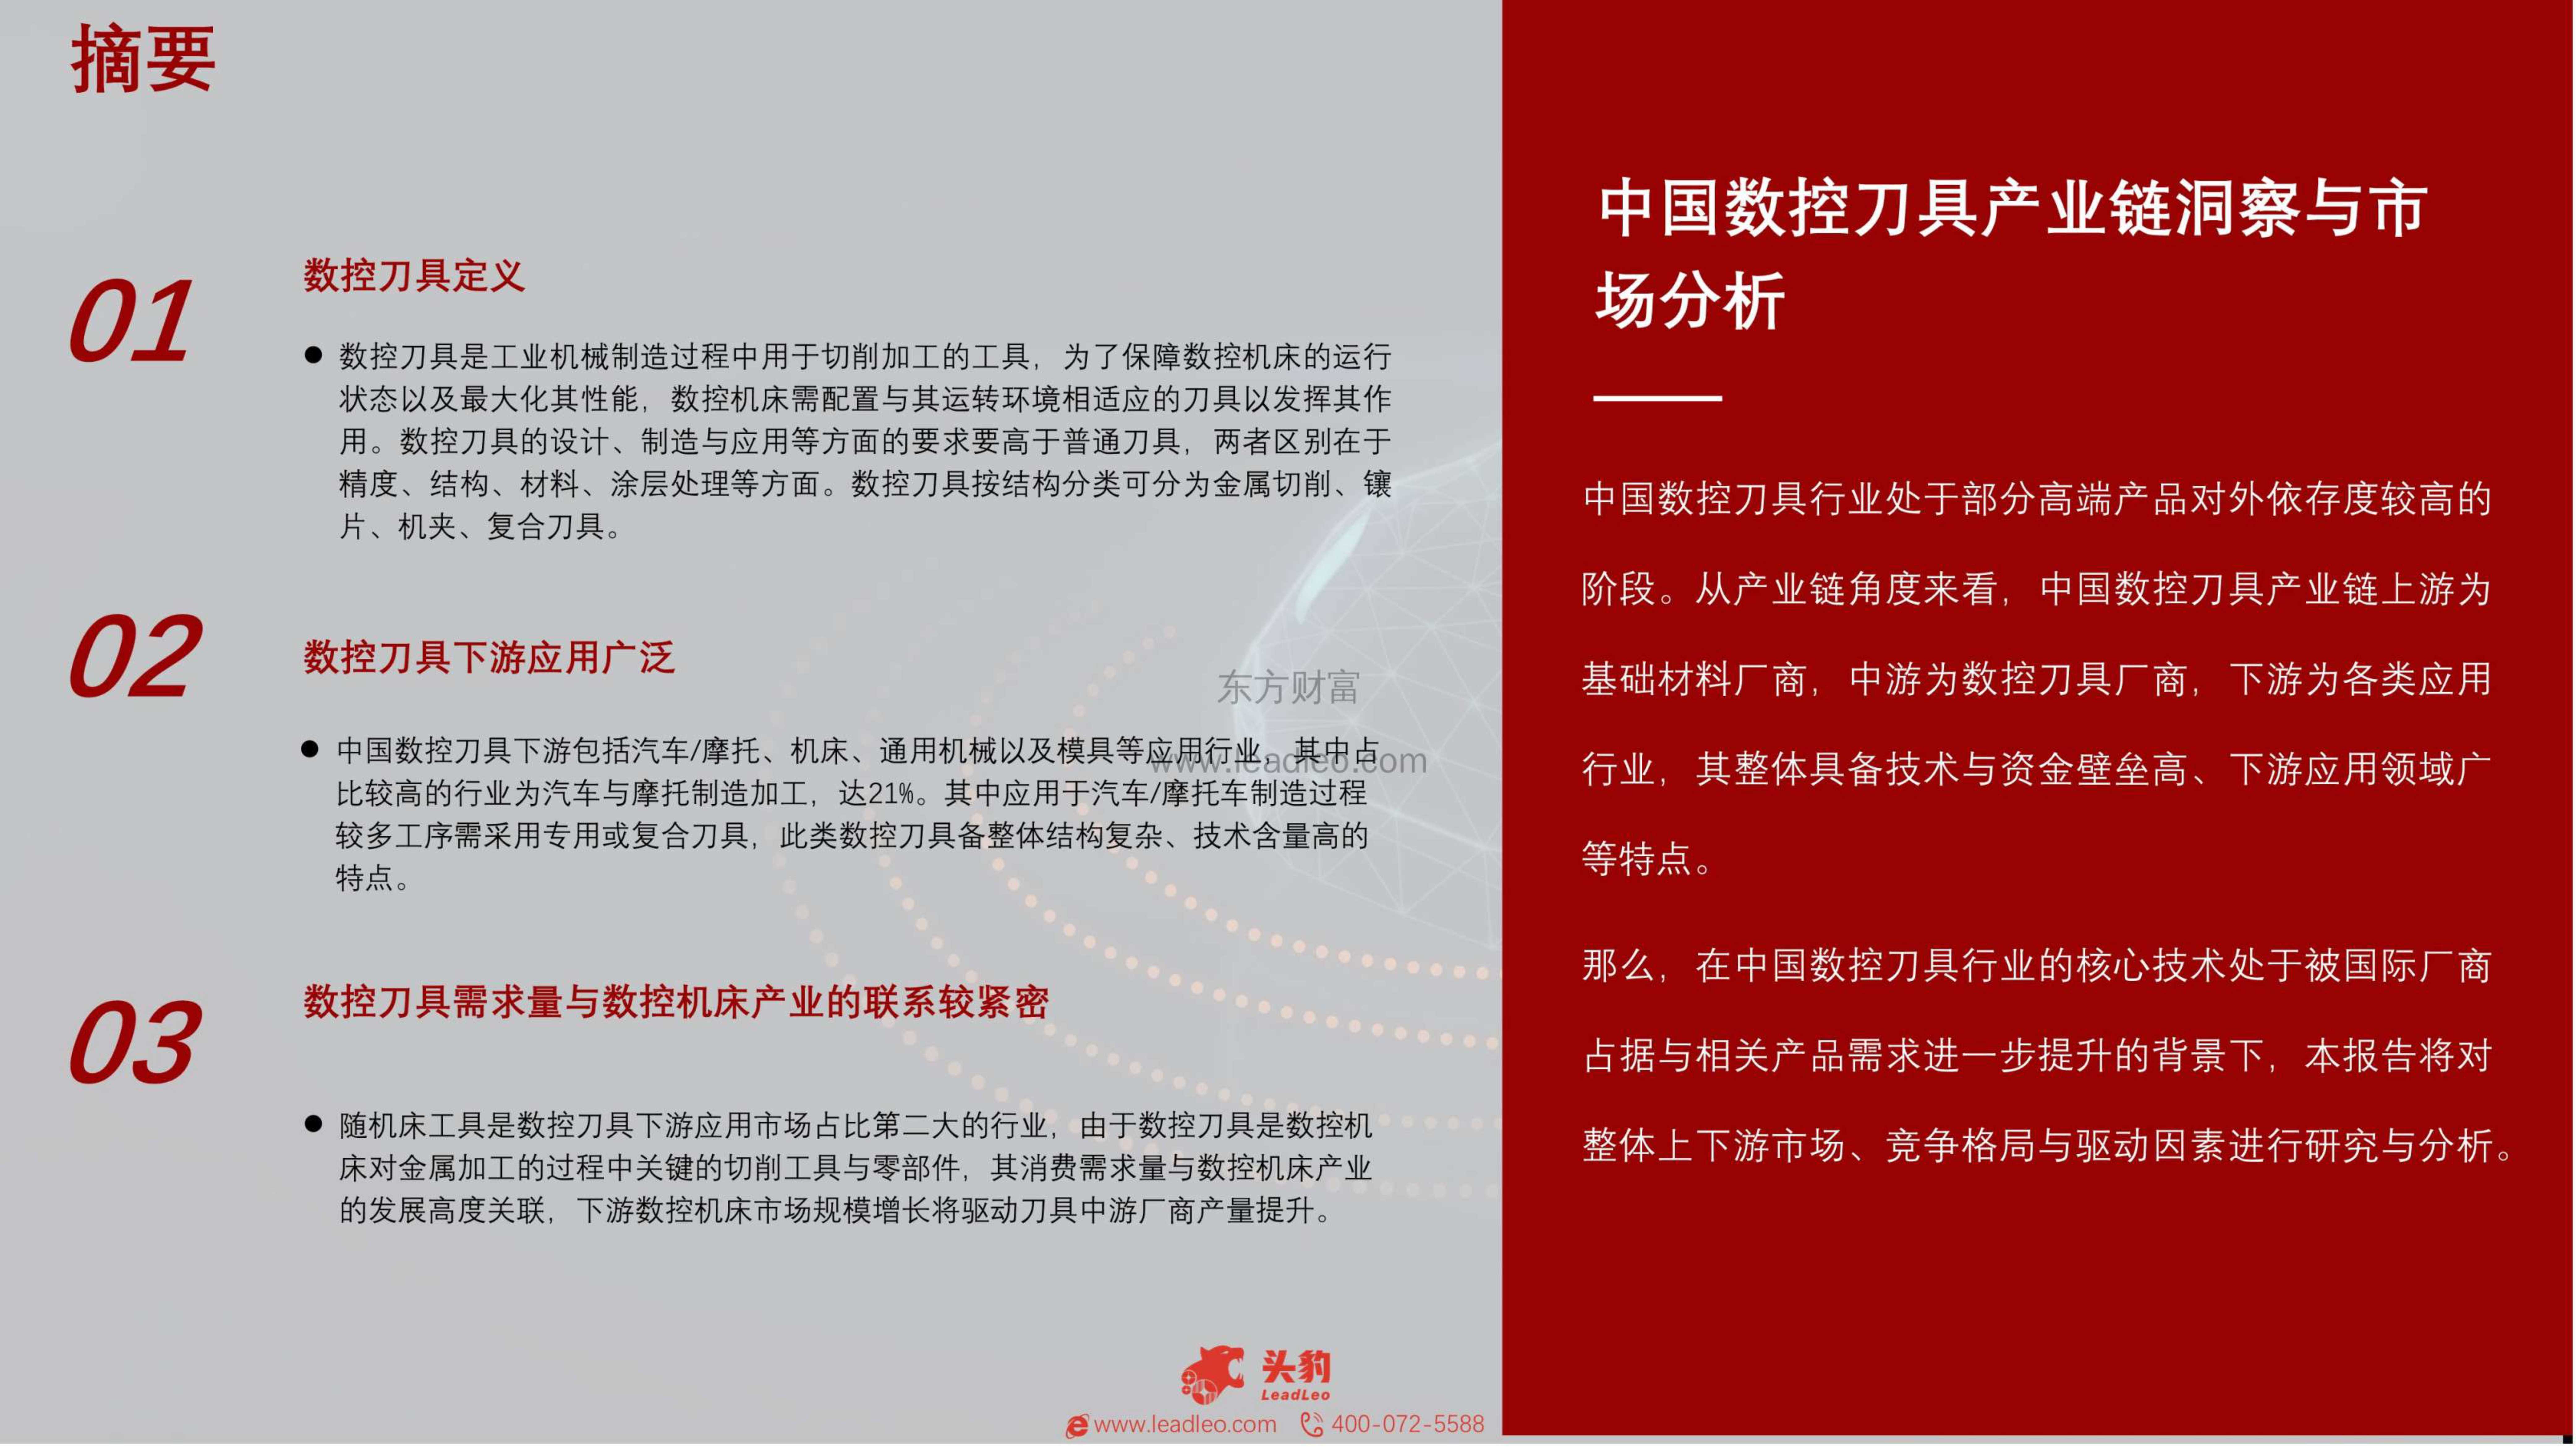 头豹研究院-2021年中国数控刀具行业短报告：国产替代进口下的机遇-2021.11-26页